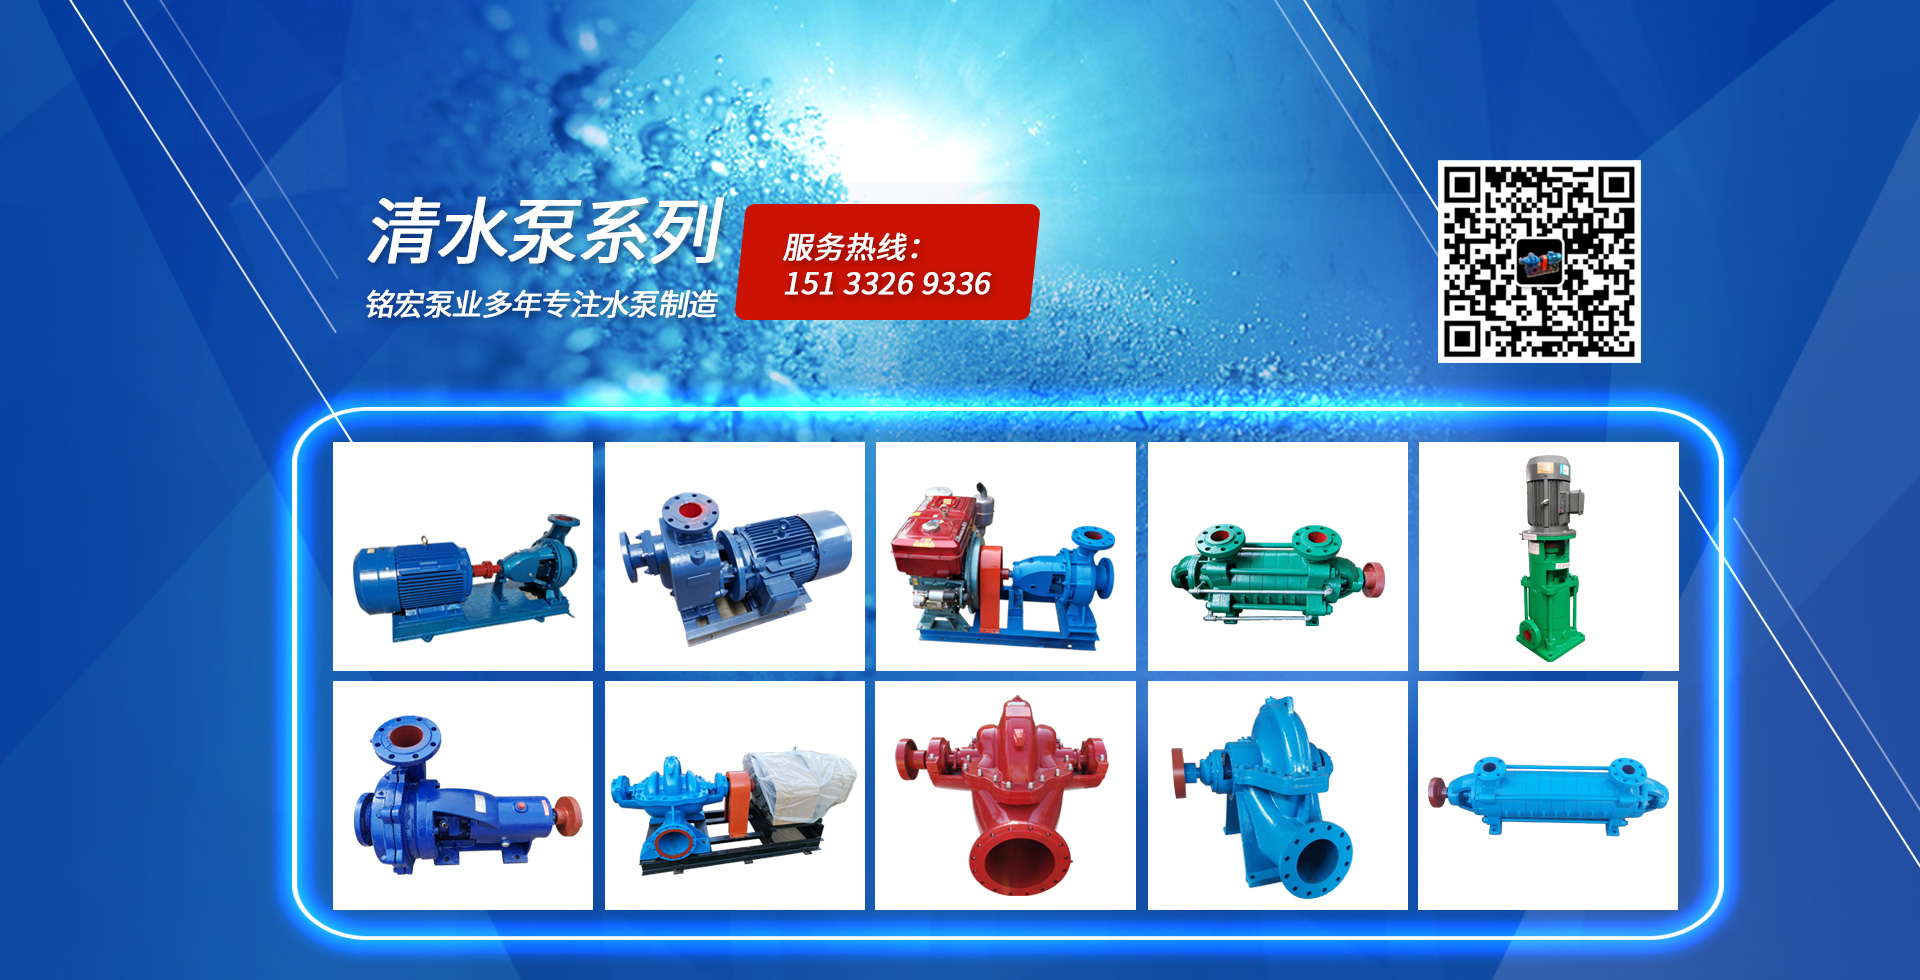 潛水抽沙泵、高揚程雙吸泵、雙吸泵、潛污泵、離心泵廠家、壓濾機入料泵、多(duō)級泵廠家、雙吸泵廠家、渣漿泵廠家